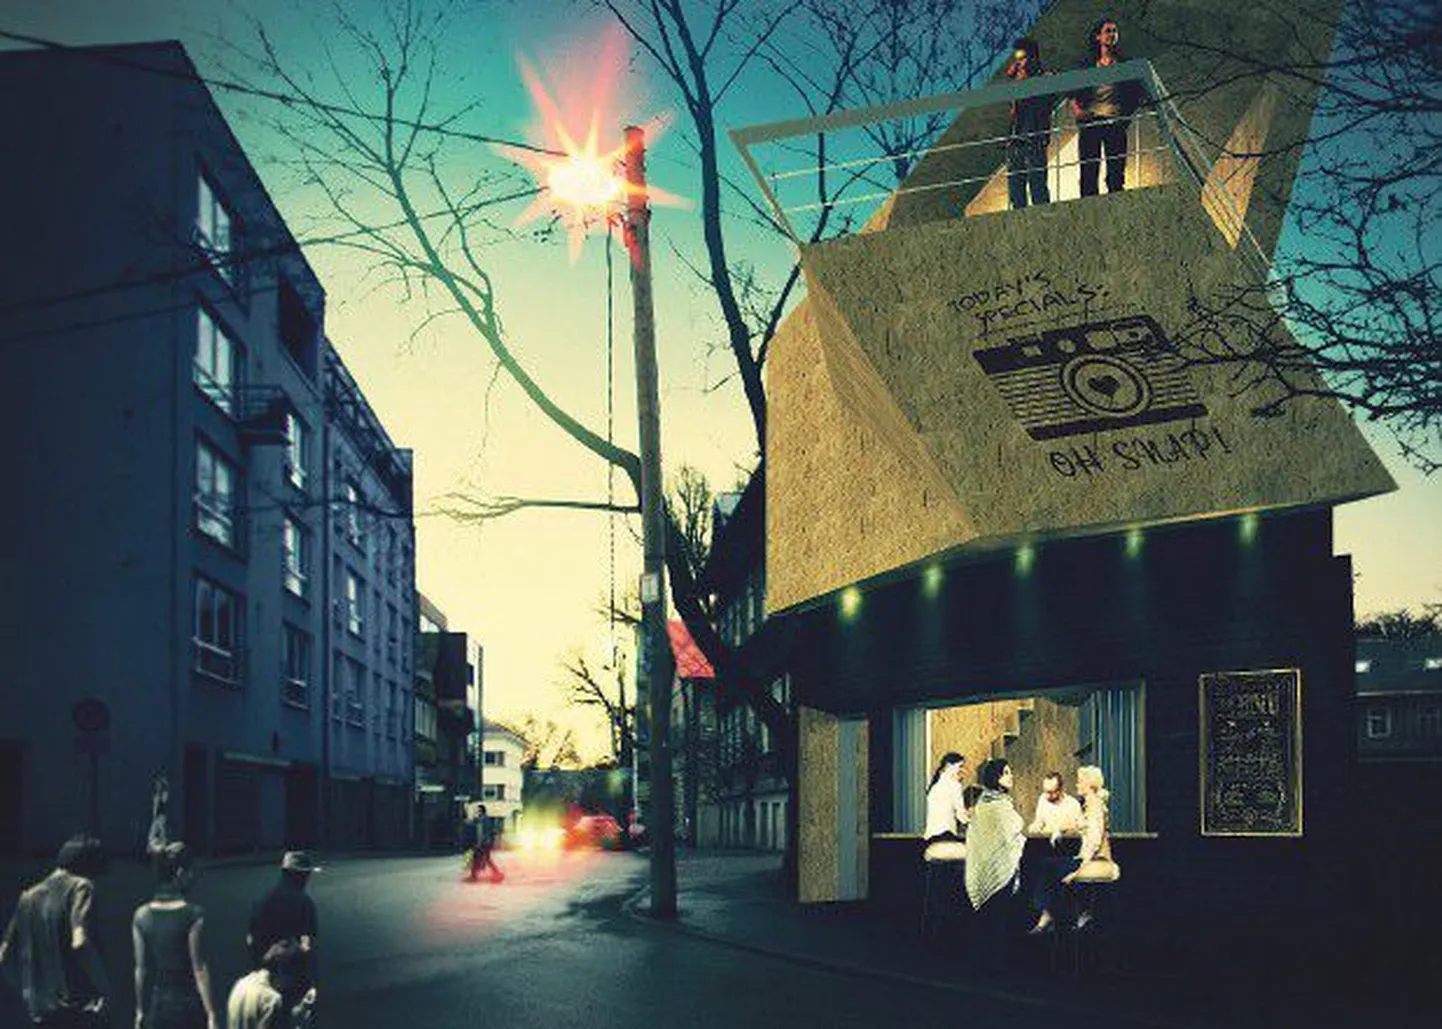 Arhitekt Musta visioon Uus-Tatari ja Ravi tänava ristmikul asuvast 16-ruutmeetrisest kasutult seisvast hoonest kui Veerenni asumi kogukondlikust tõmbepunktist-kohvikust.